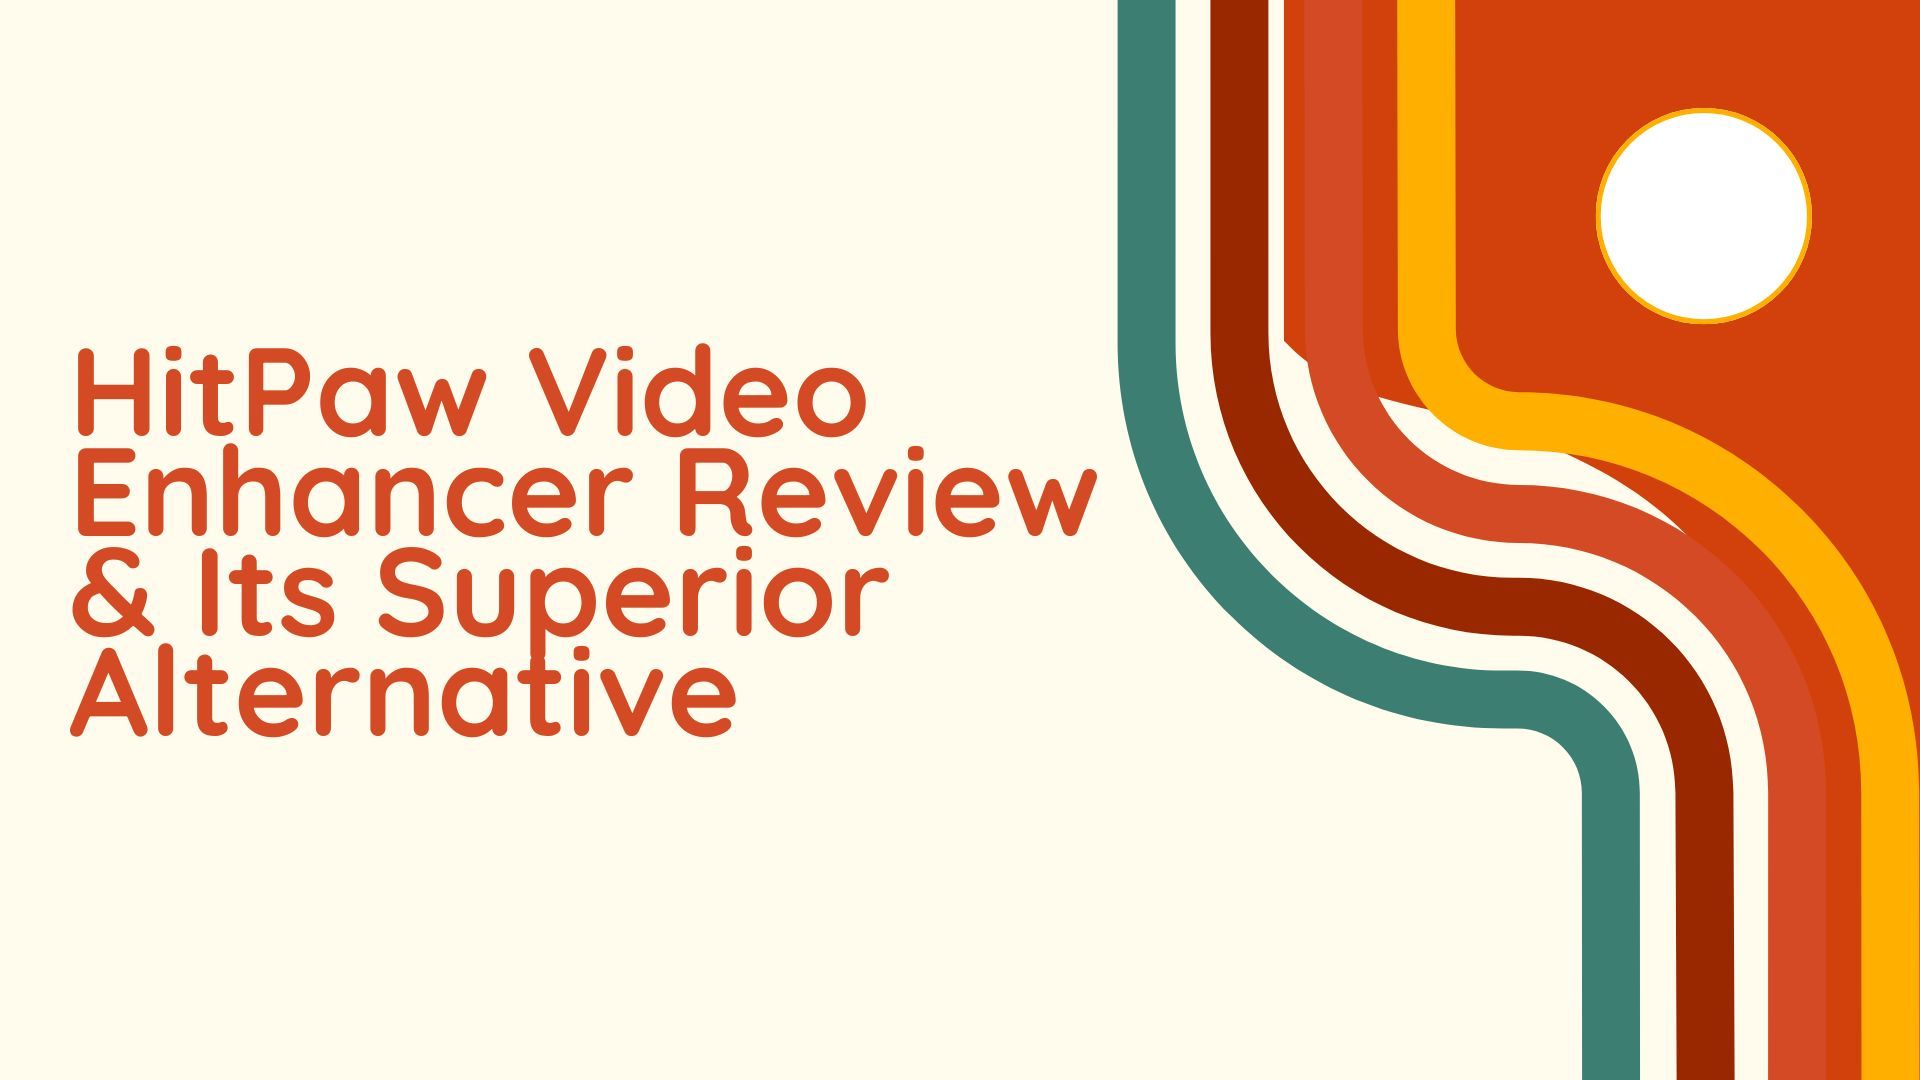 HitPaw Video Enhancer Review & Its Superior Alternative